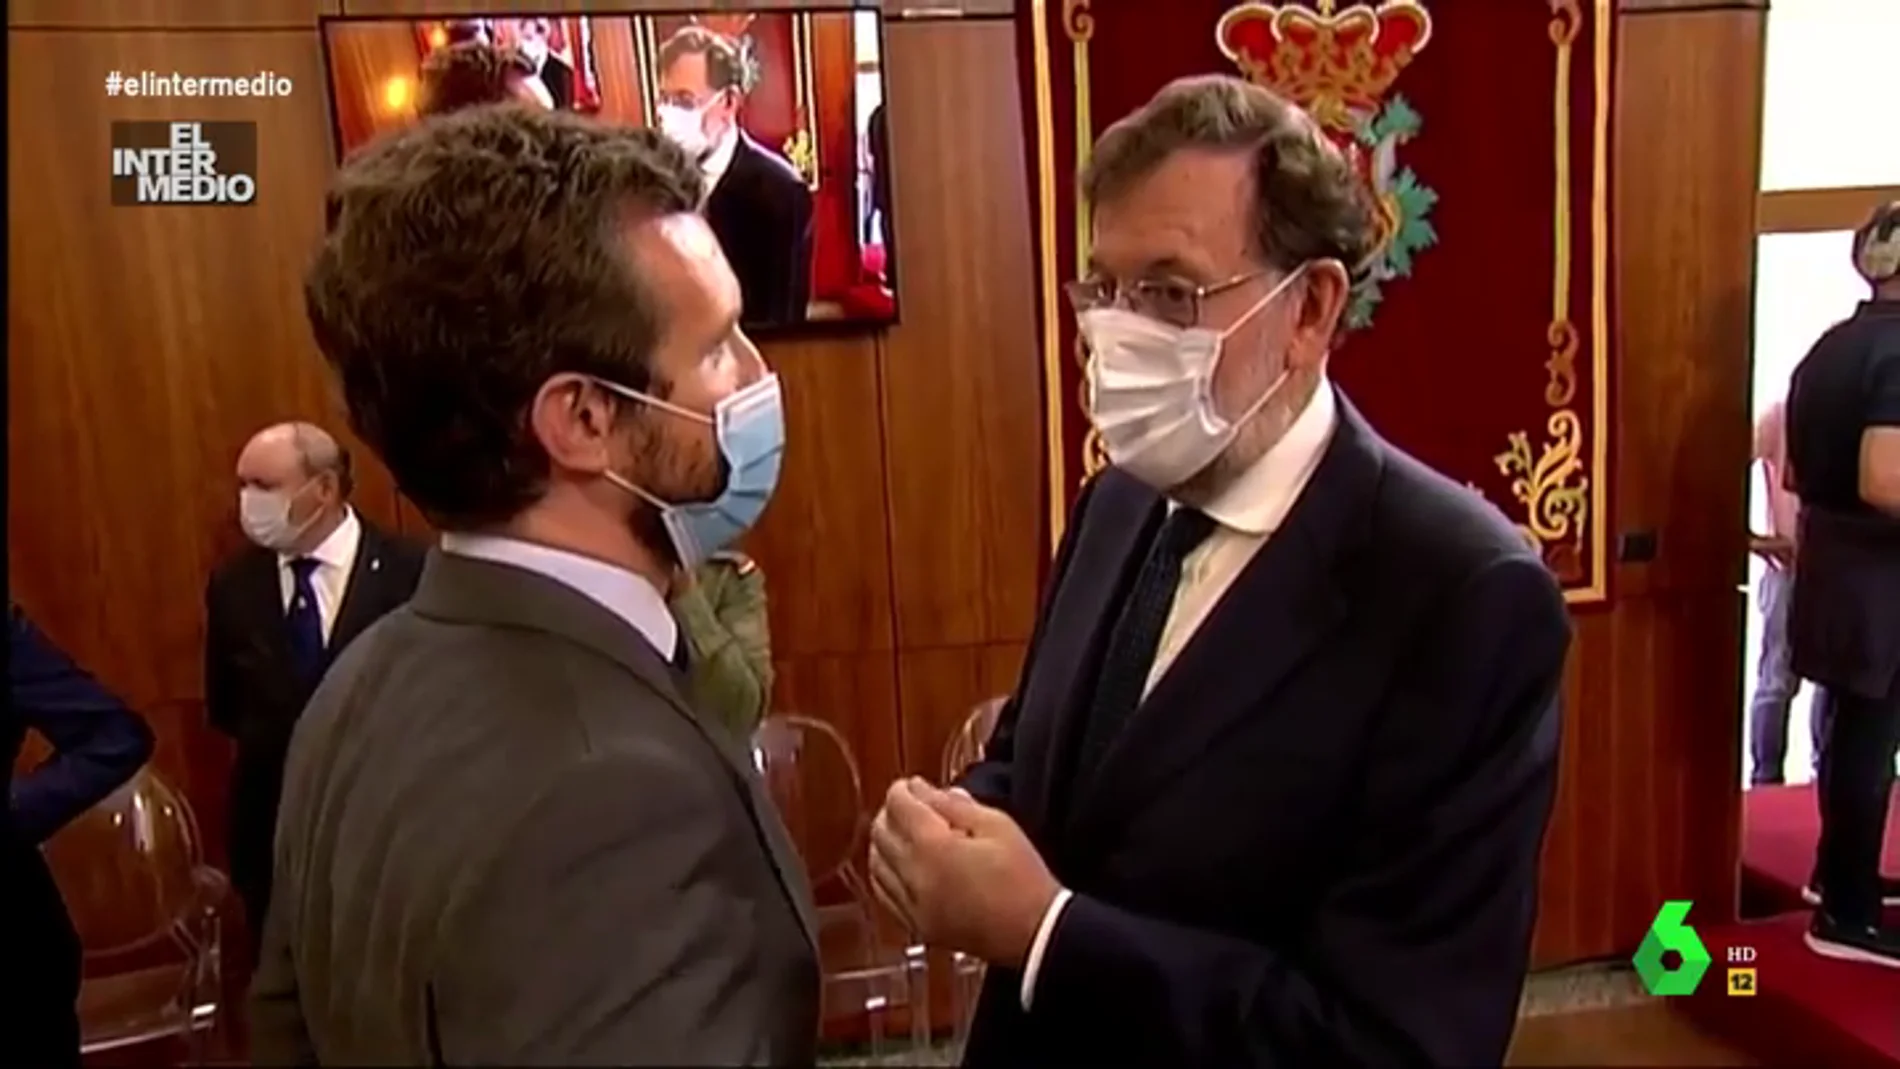 Vídeo manipulado - Así 'cuenta' Mariano Rajoy con su "amigo" Pablo Casado 